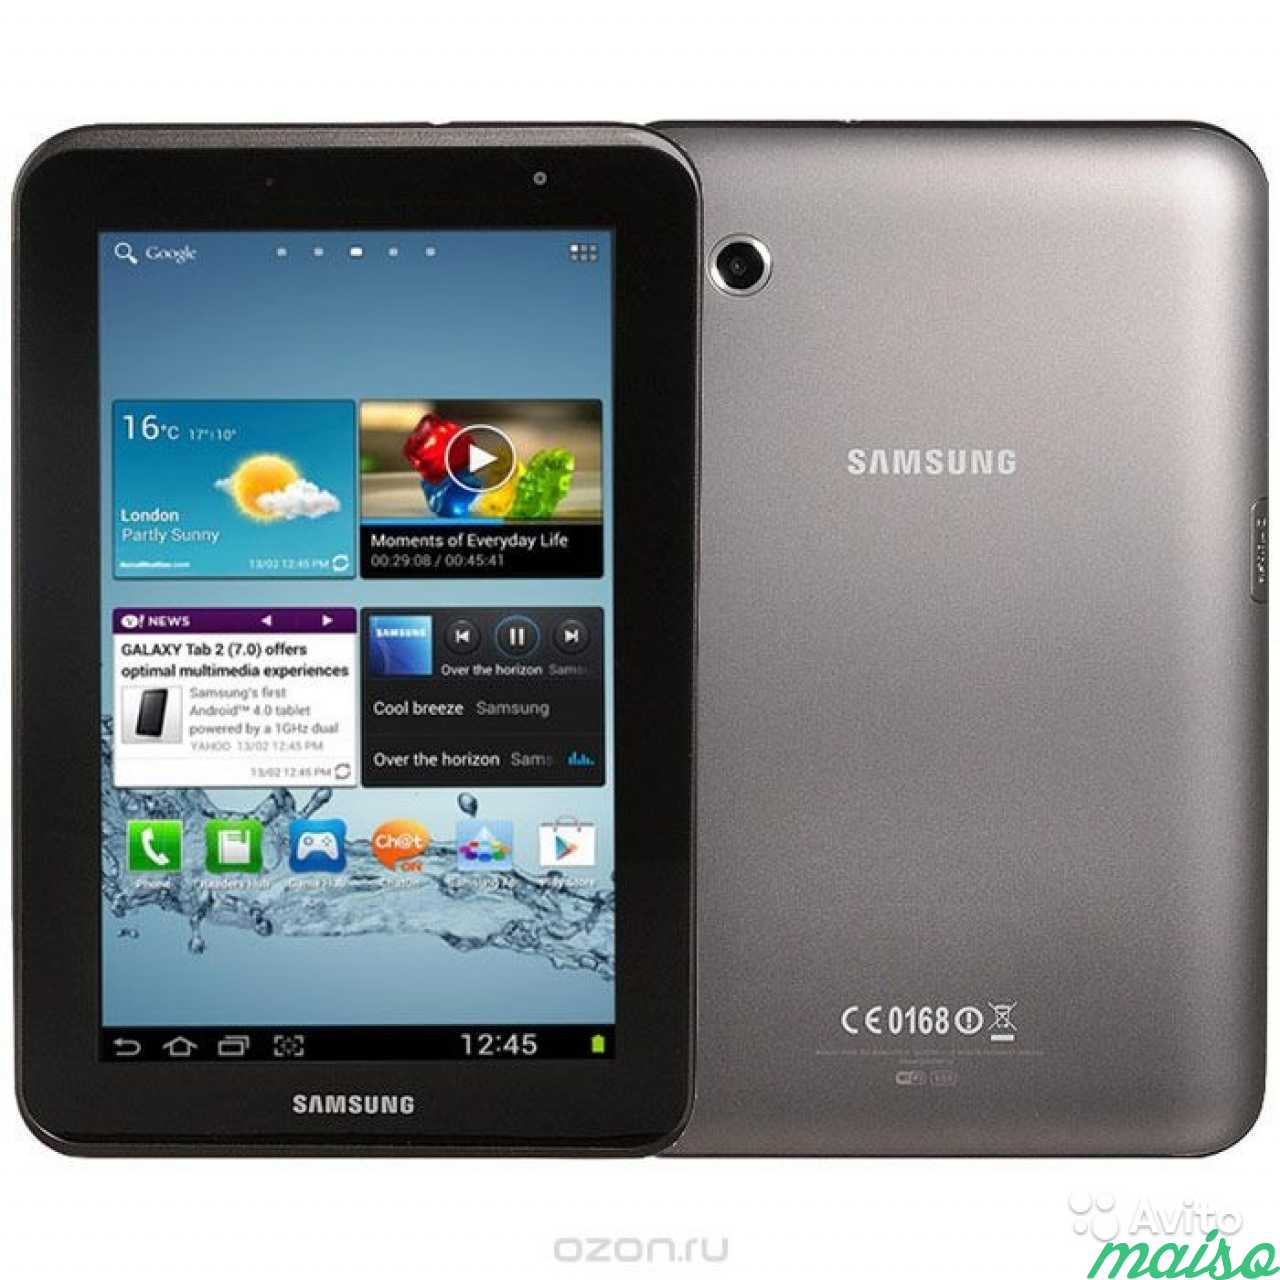 Galaxy 2 7. Samsung Galaxy Tab p3110. Samsung Galaxy Tab 2 7. Samsung Galaxy Tab 2 7.0. Samsung Galaxy Tab p3110 8gb.